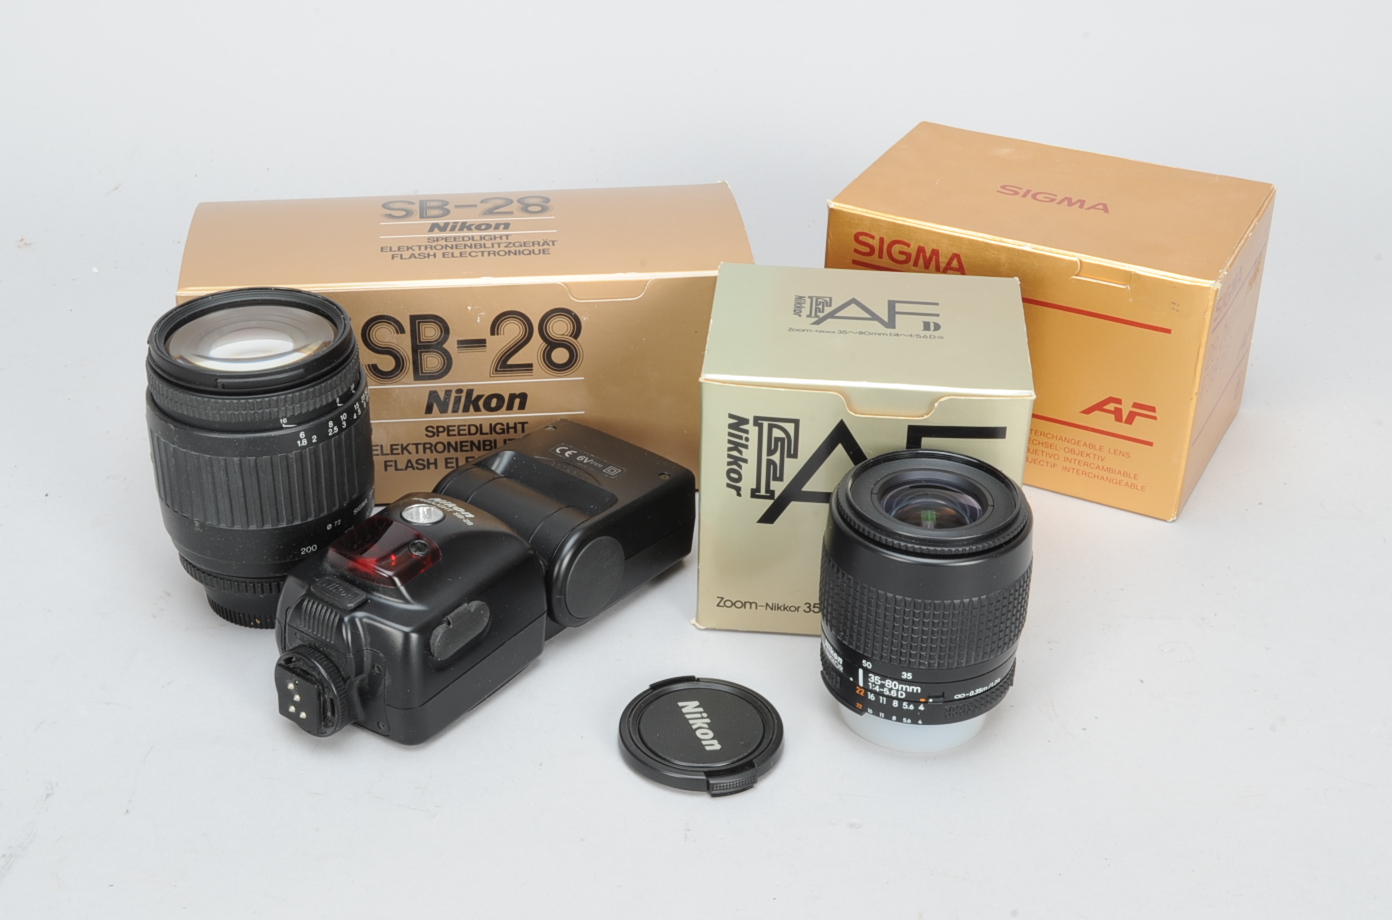 Nikon and Sigma Zoom Lenses and a Nikon Speedlight SB-28, an AF-Nikkor, 35-80mm f/4-5.6D lens, G,